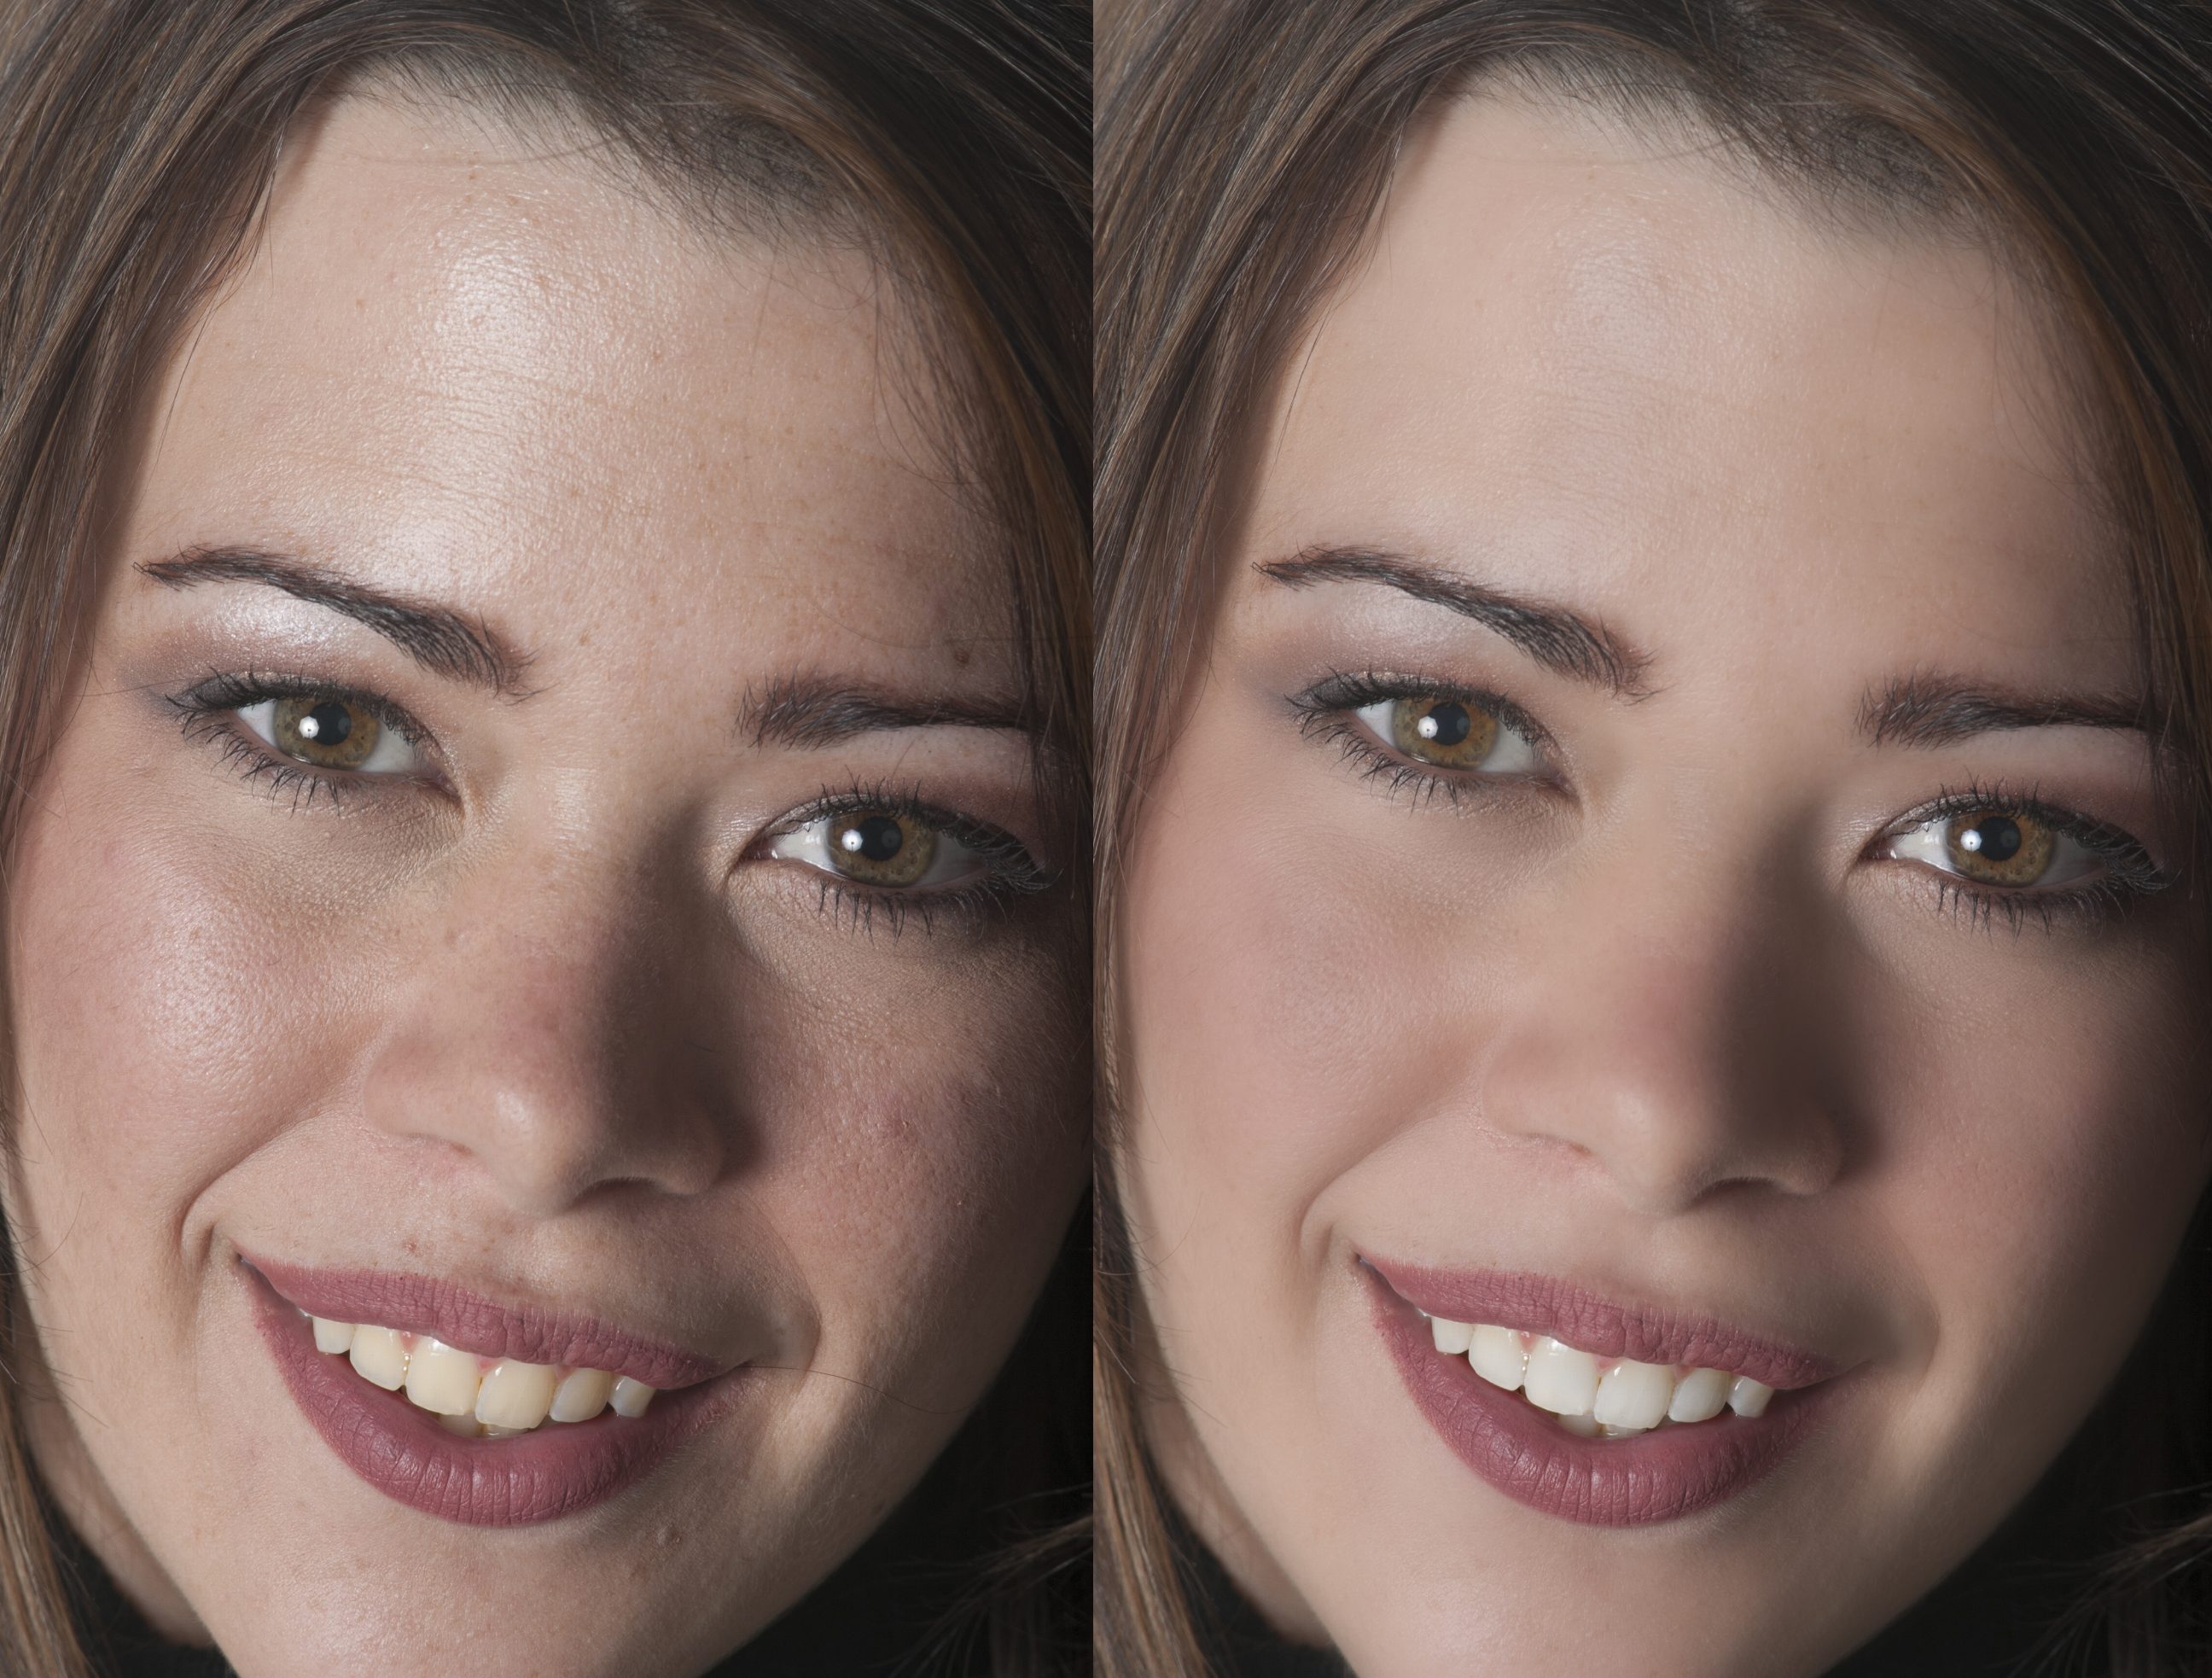 Как уменьшить лицо на фото в фотошопе